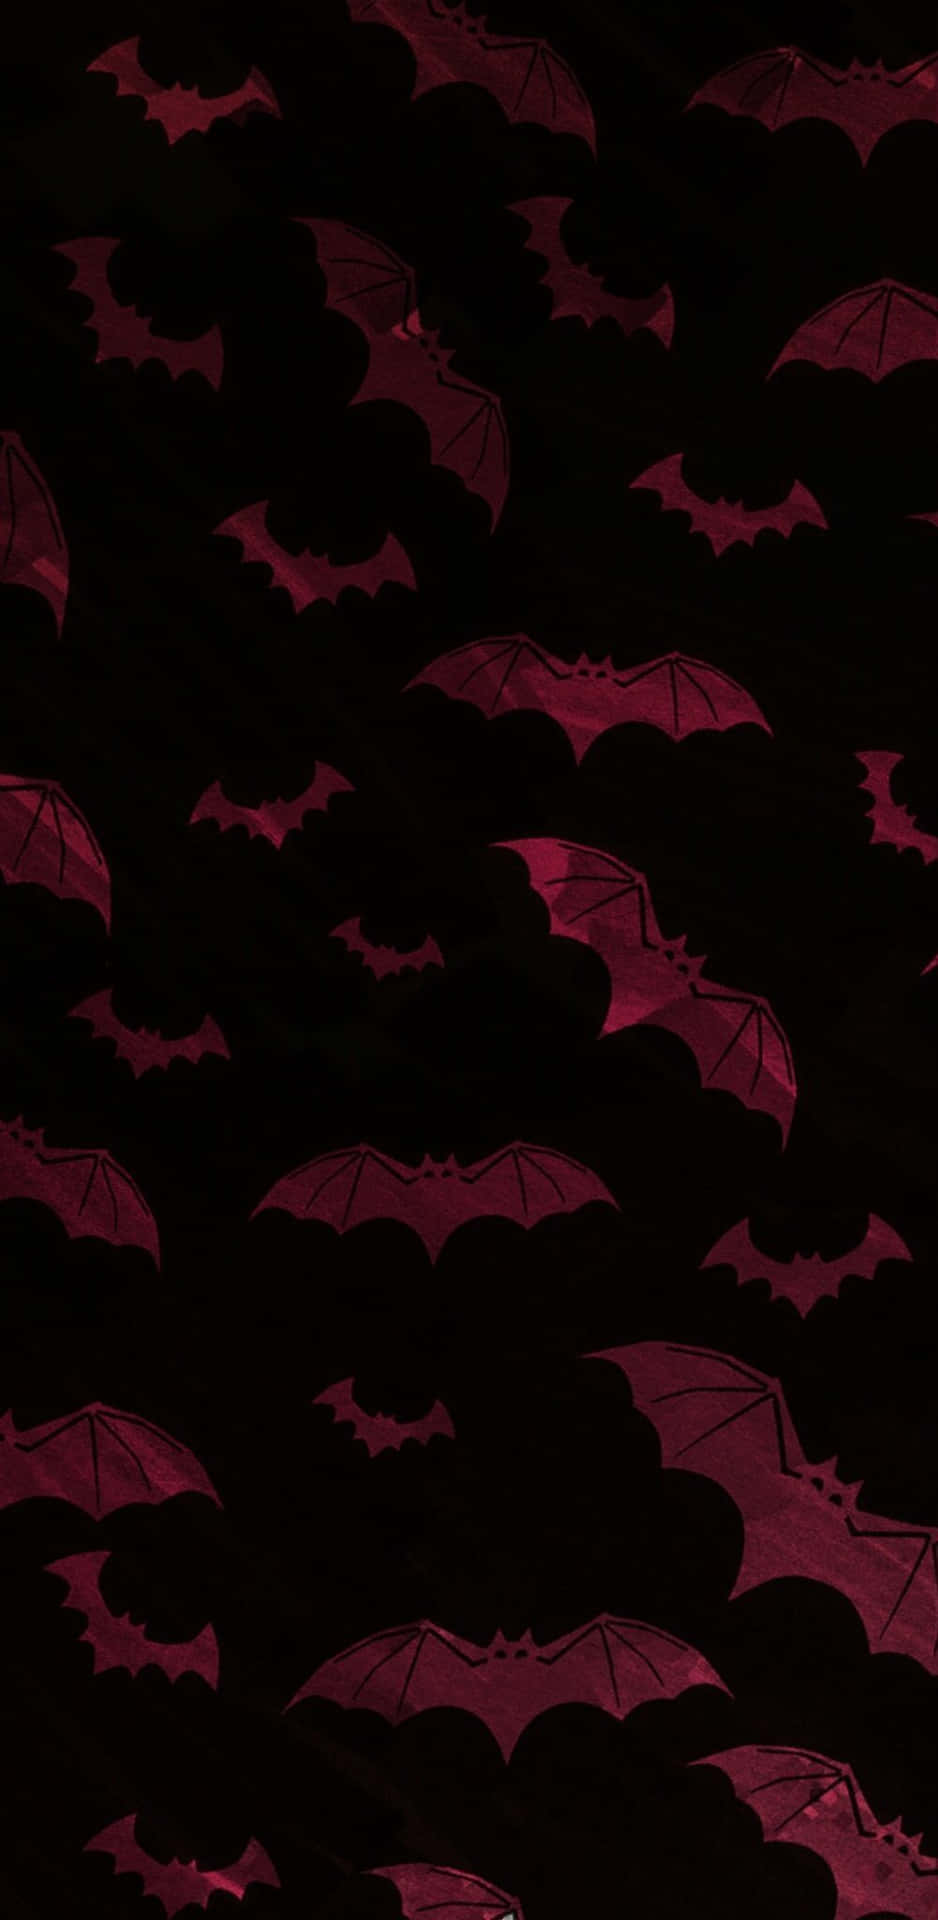 Shadow Bats In Moonlit Sky